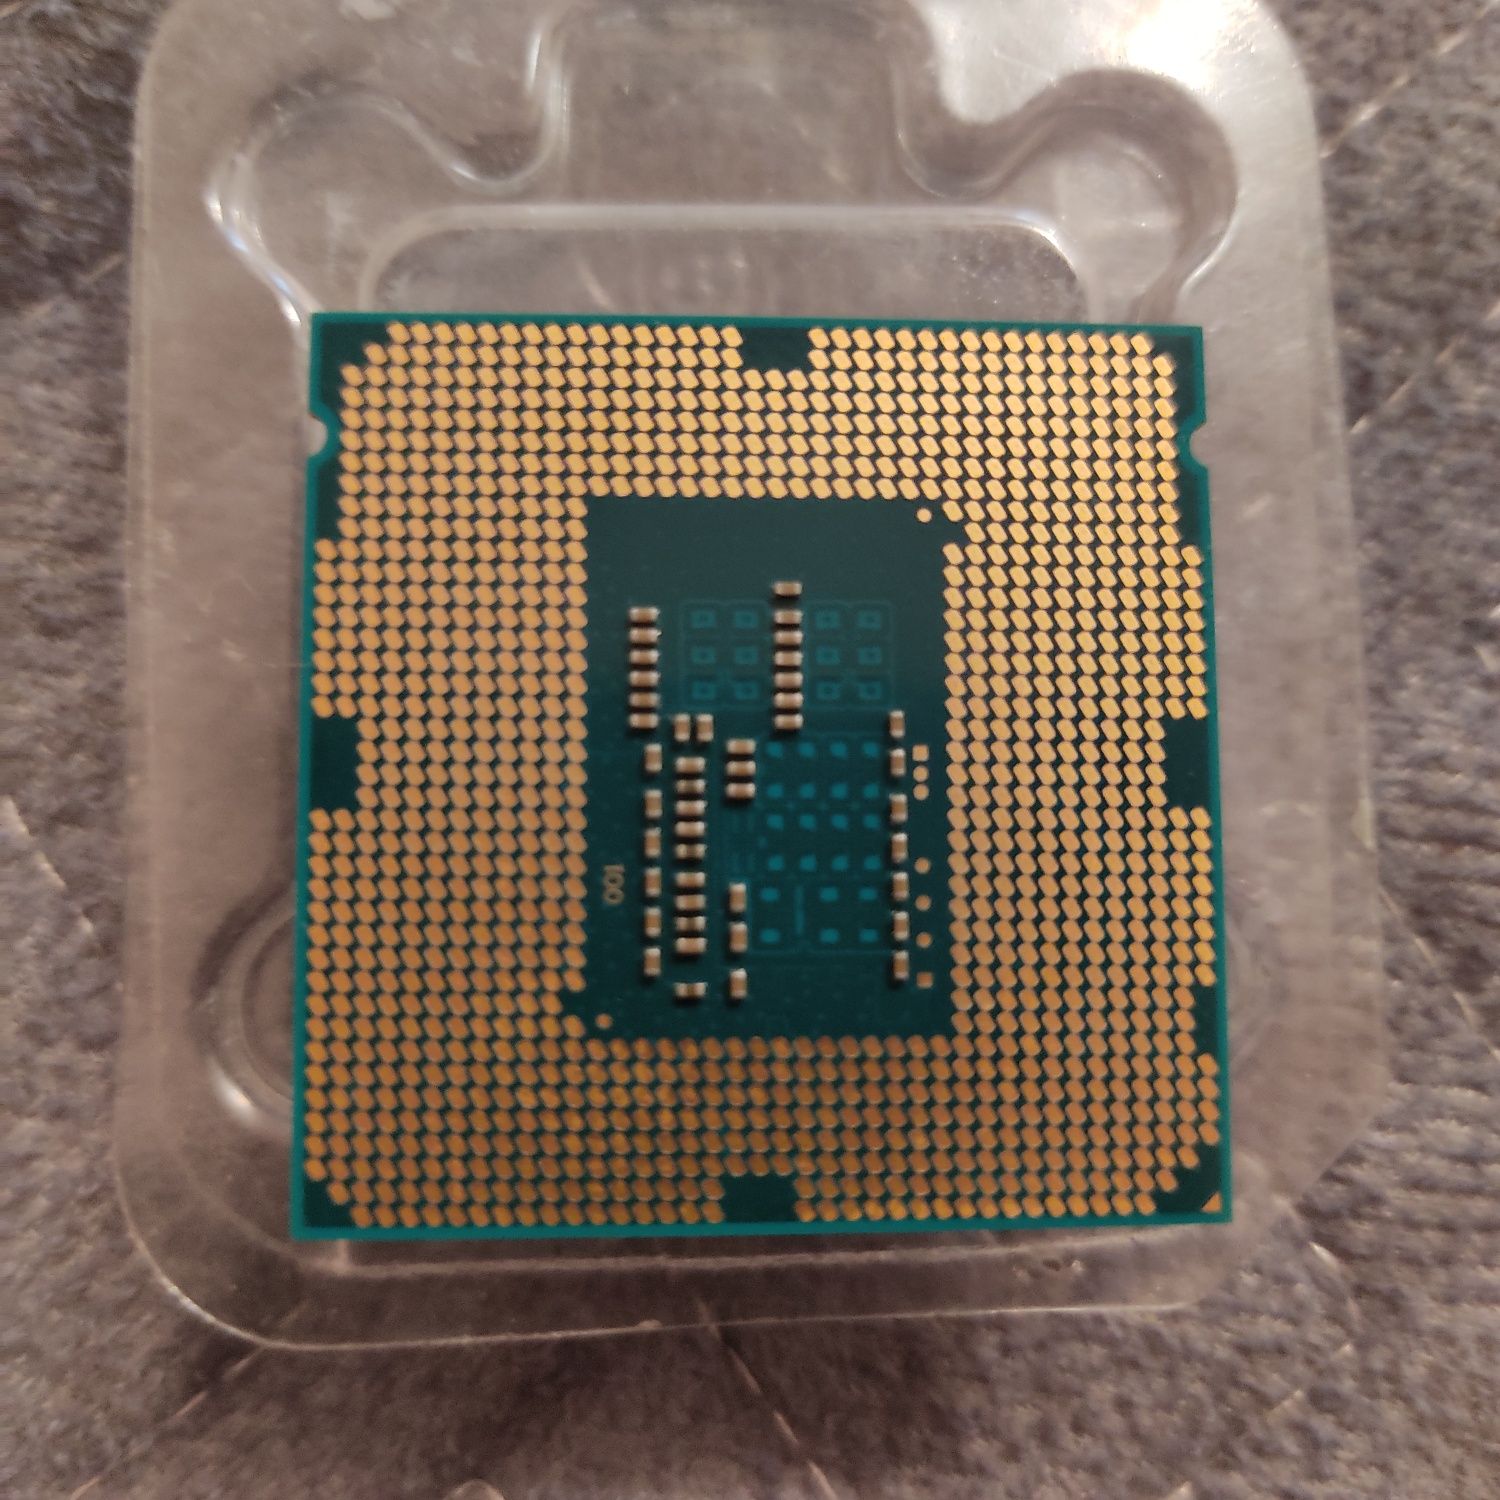 LGA 1150
процессор Intel Celeron G1840 2 МБ 2,8 Гц 2 ядра 100% рабочий